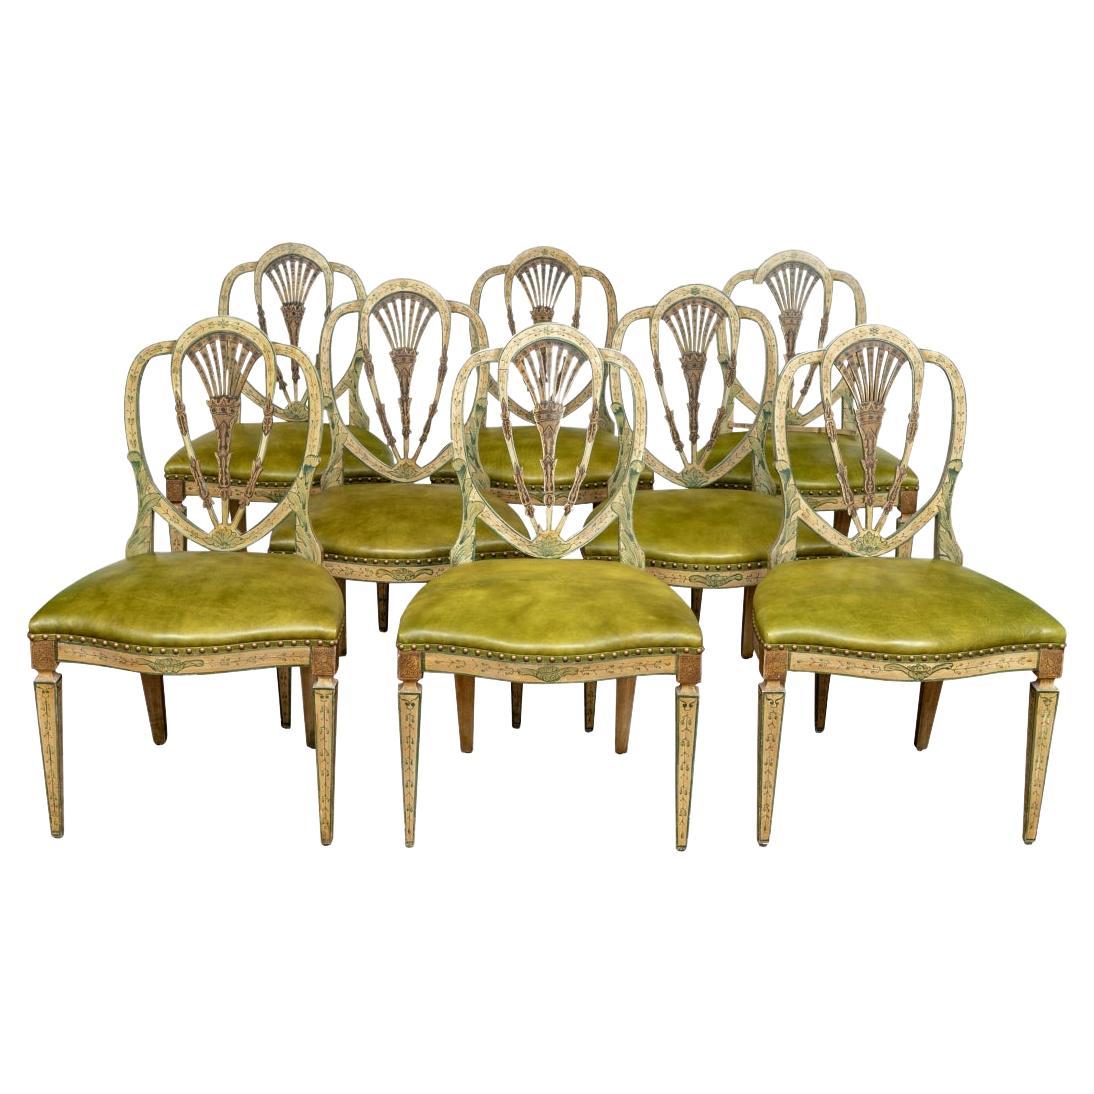 Extraordinaire ensemble de 8 chaises d'appoint peintes de style George III à dossier en forme de bouclier